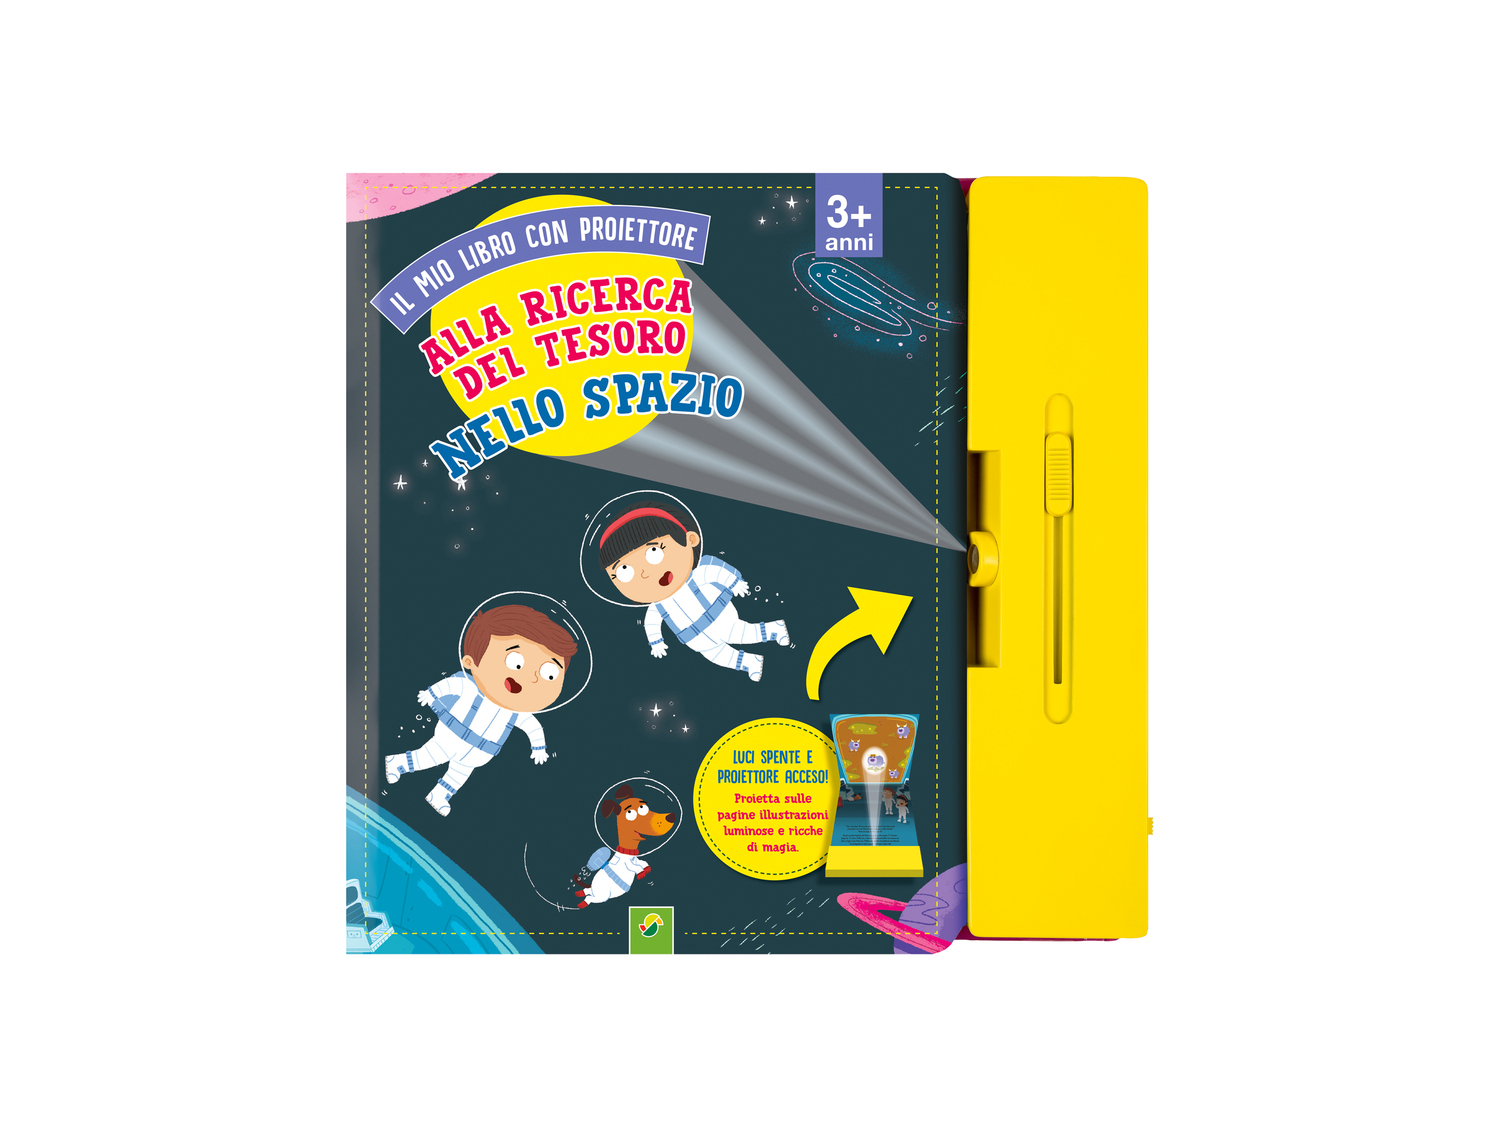 Libro per bambini con proiettore , prezzo 12.99 &#8364; 
- Proietta sulle pagine ...